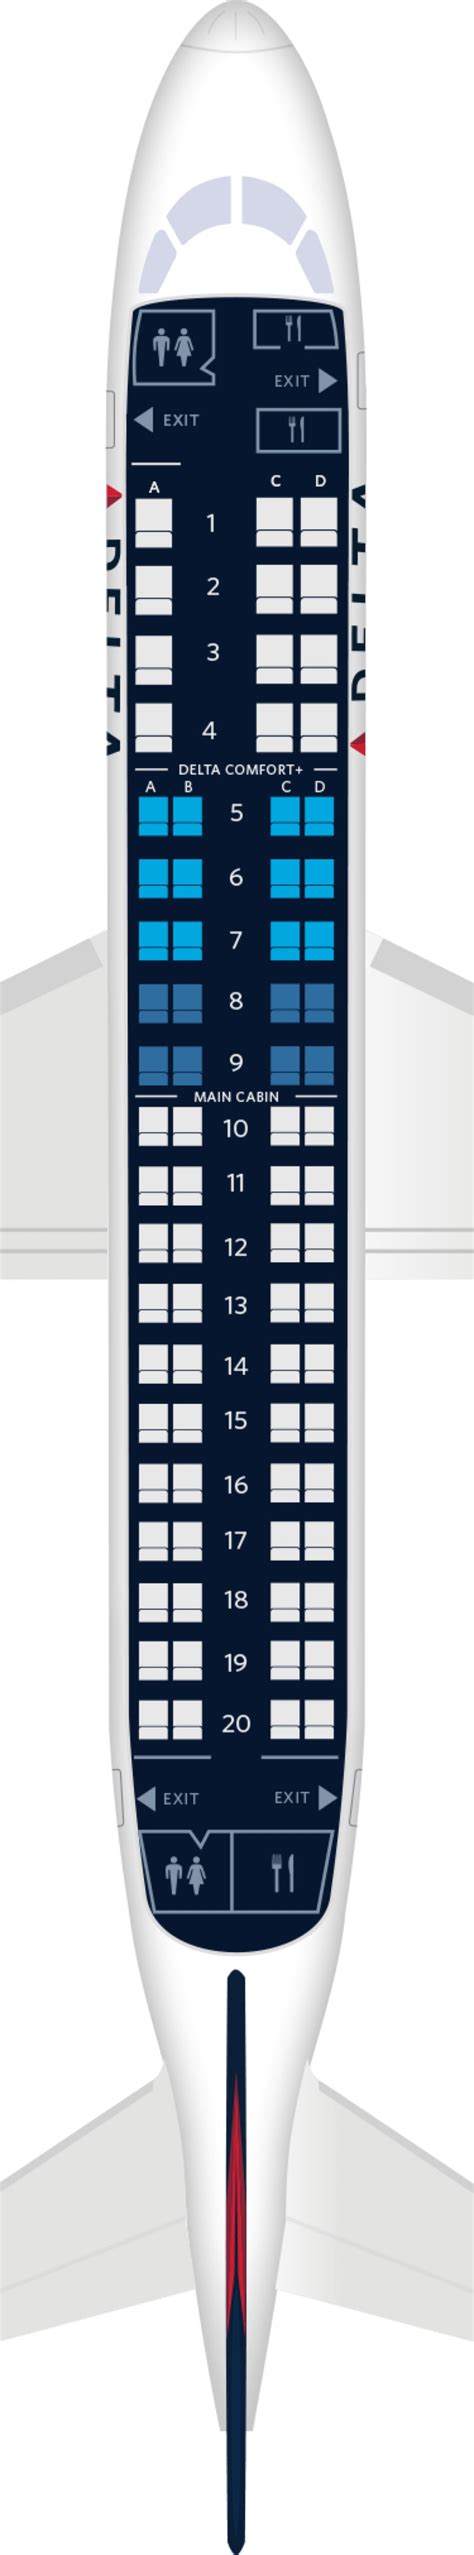 Embraer ERJ 175 Seat Maps Specs Amenities Delta Air Lines